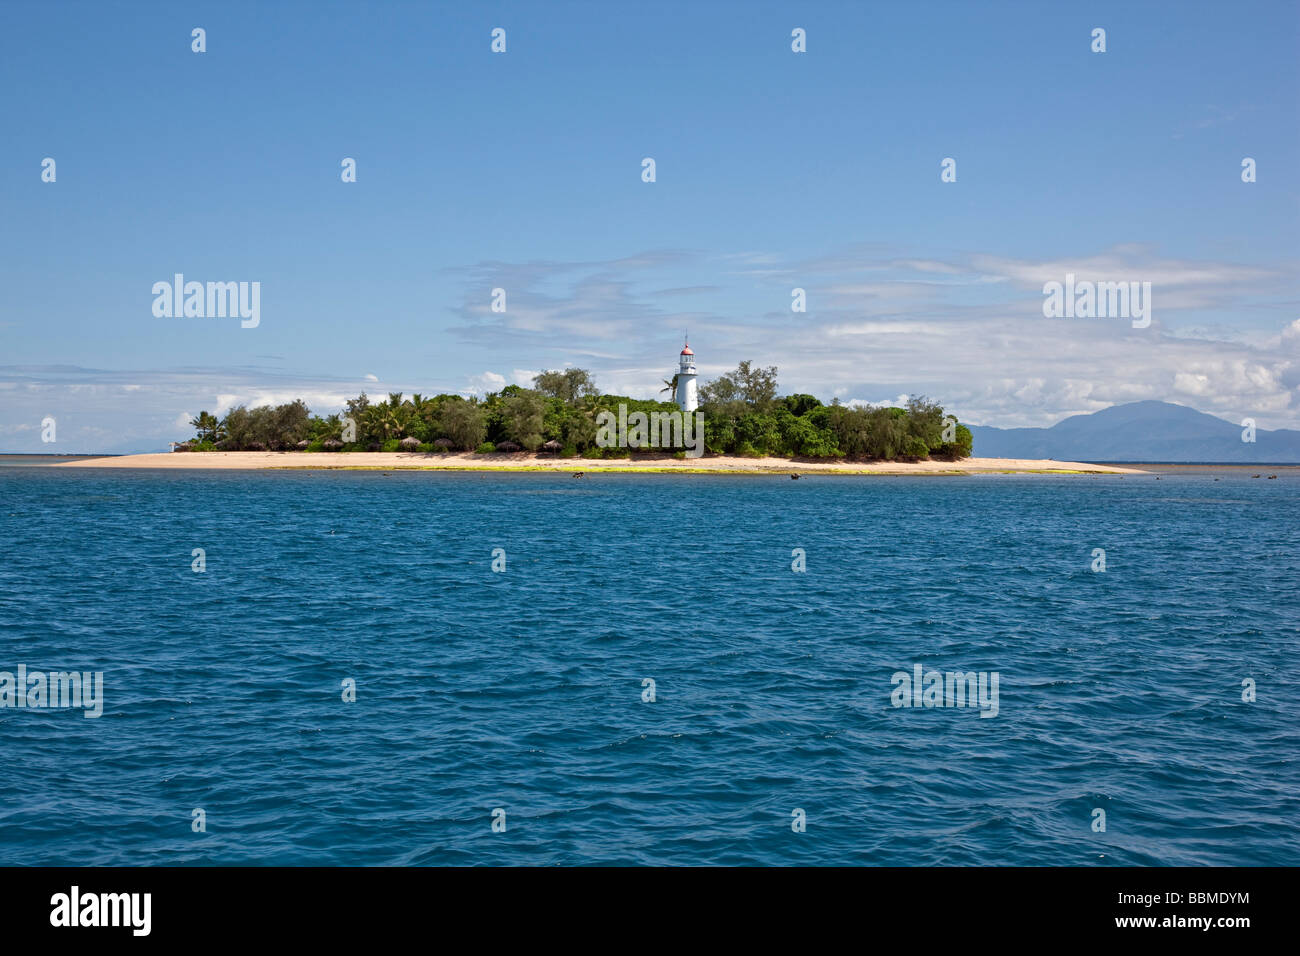 L'Australie, dans le Queensland. Îles basses bordées de palmiers et son phare sont situés sur la face intérieure de corail de la Grande Barrière de Corail. Banque D'Images